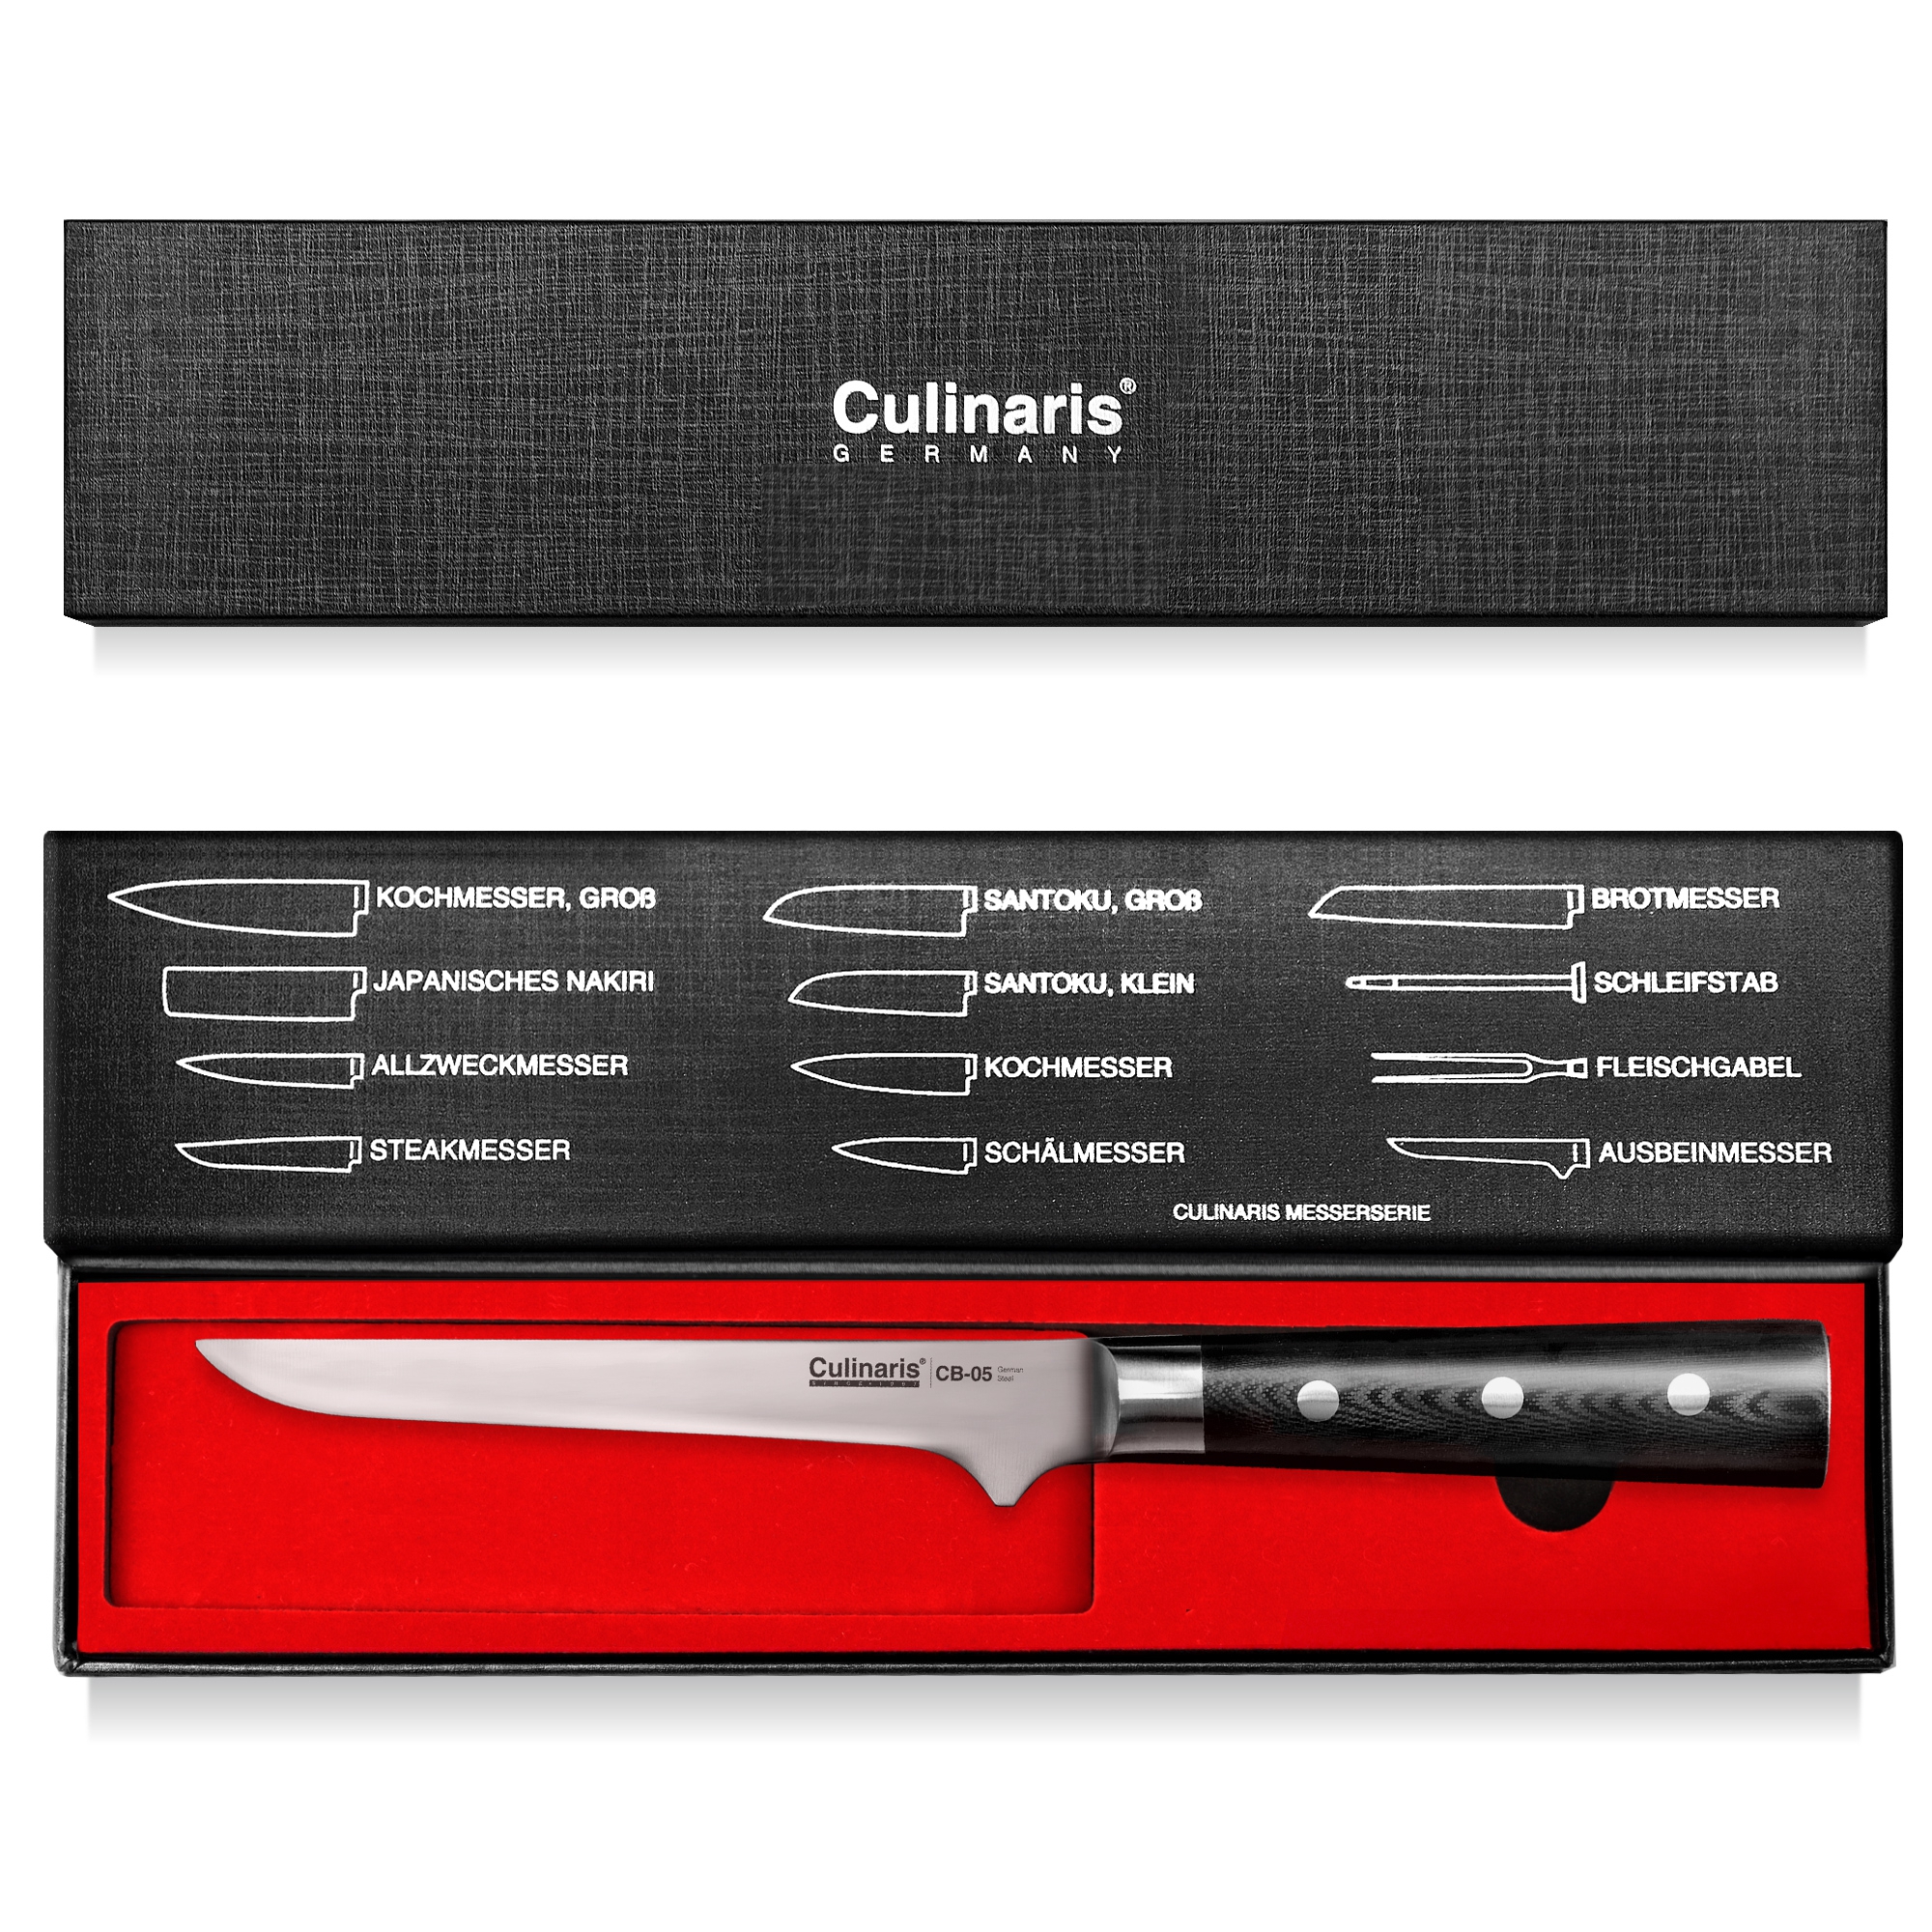 Culinaris - Messer-Set - Kochmesser CB-08 + Schälmesser CB-01 + Ausbeinmesser CB-05 + Messerblock CB-13